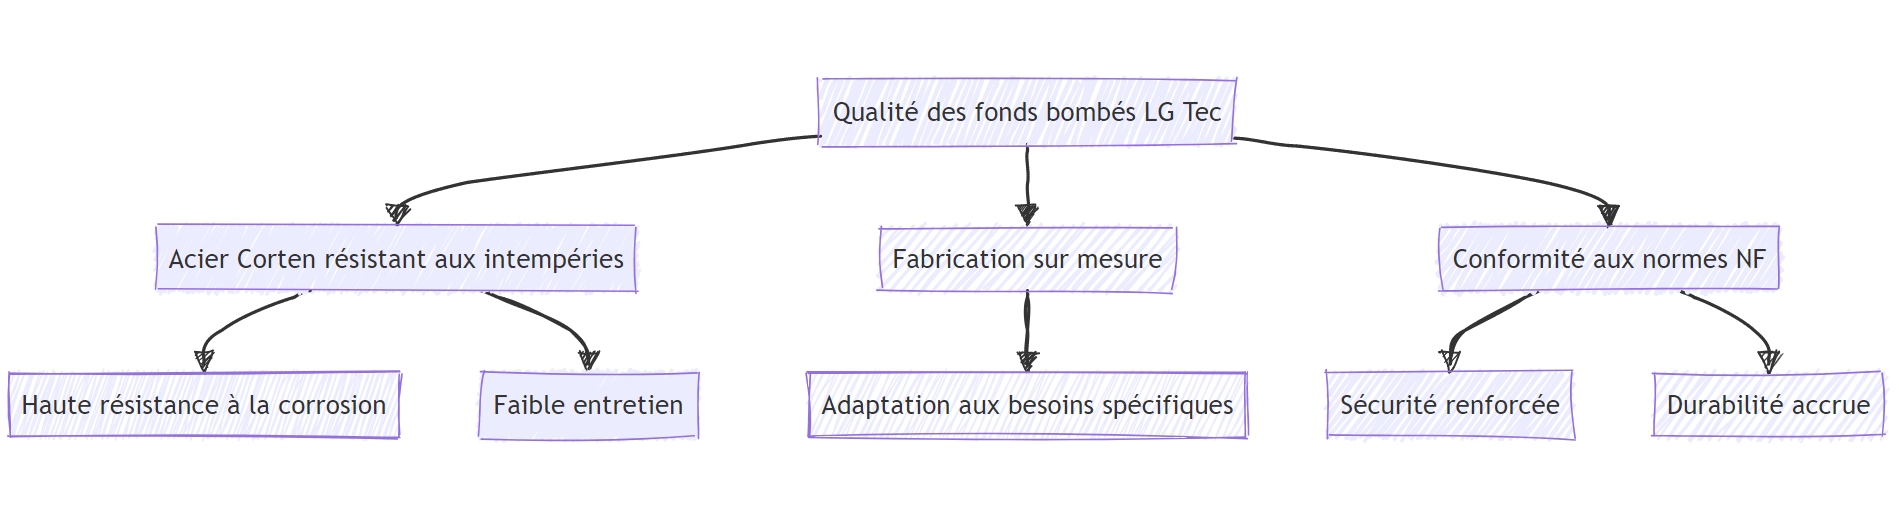 infographie du fond bombé métallique LG Tec qui équipe les industriels du Braséro